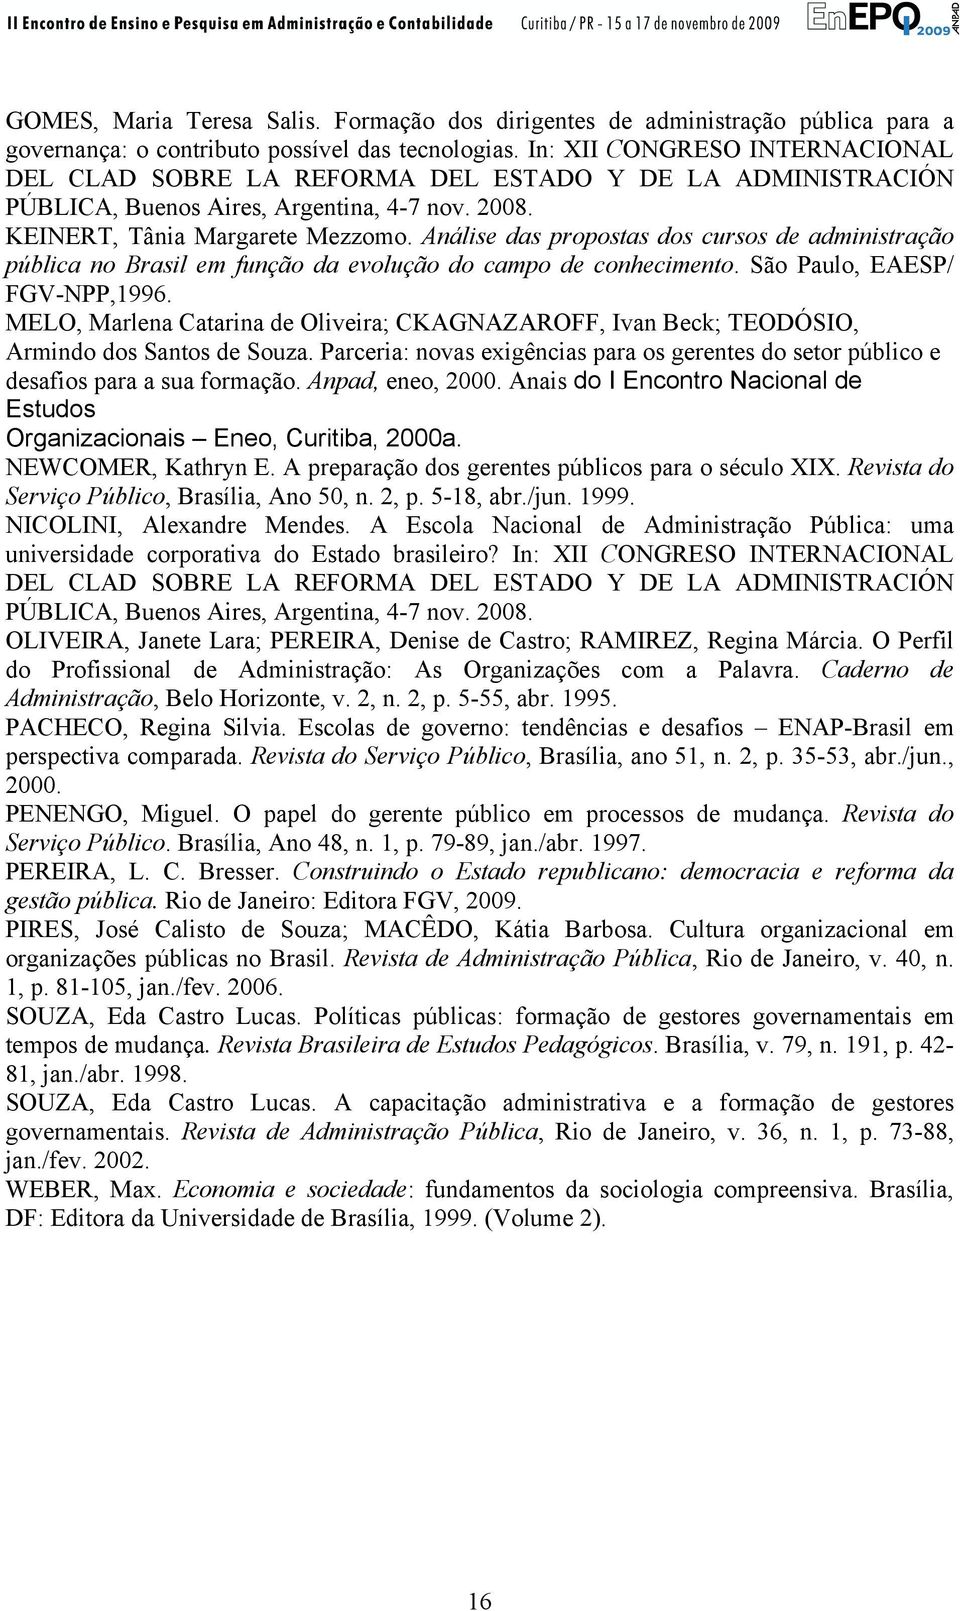 Análise das propostas dos cursos de administração pública no Brasil em função da evolução do campo de conhecimento. São Paulo, EAESP/ FGV-NPP,1996.